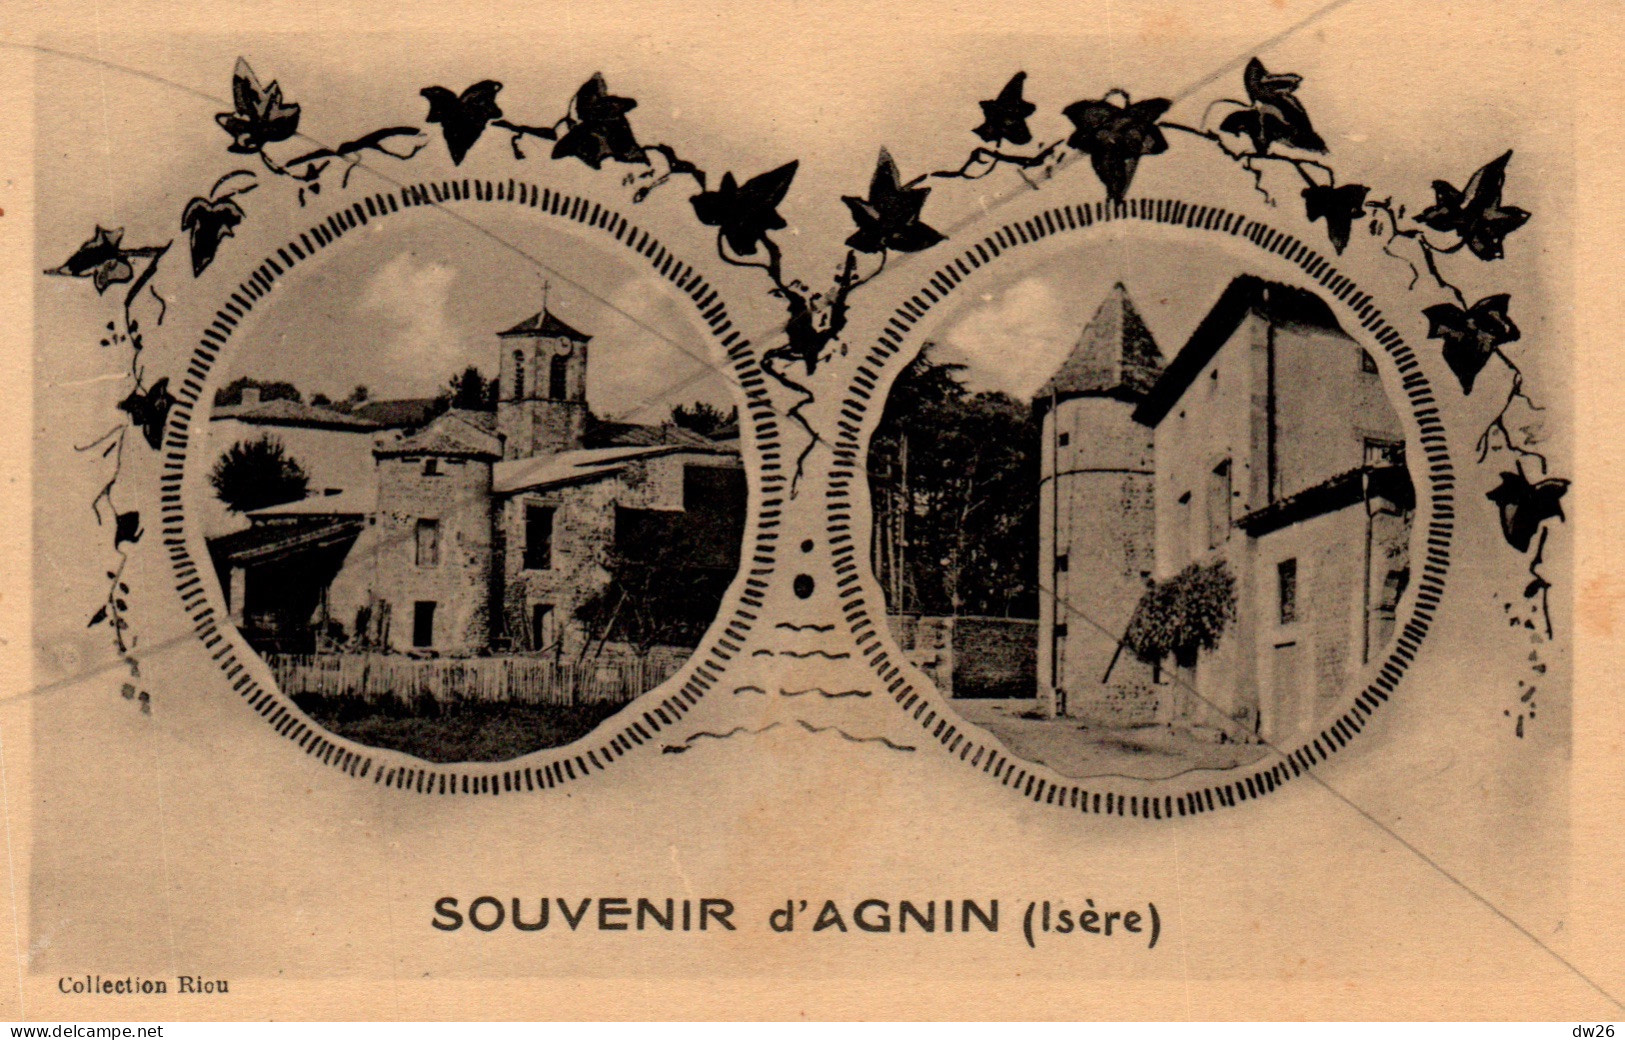 Souvenir D'Agnin (Isère) Multivues (Eglise, Chateau) Collection Riou - Carte J. Cellard Non Circulée - Greetings From...